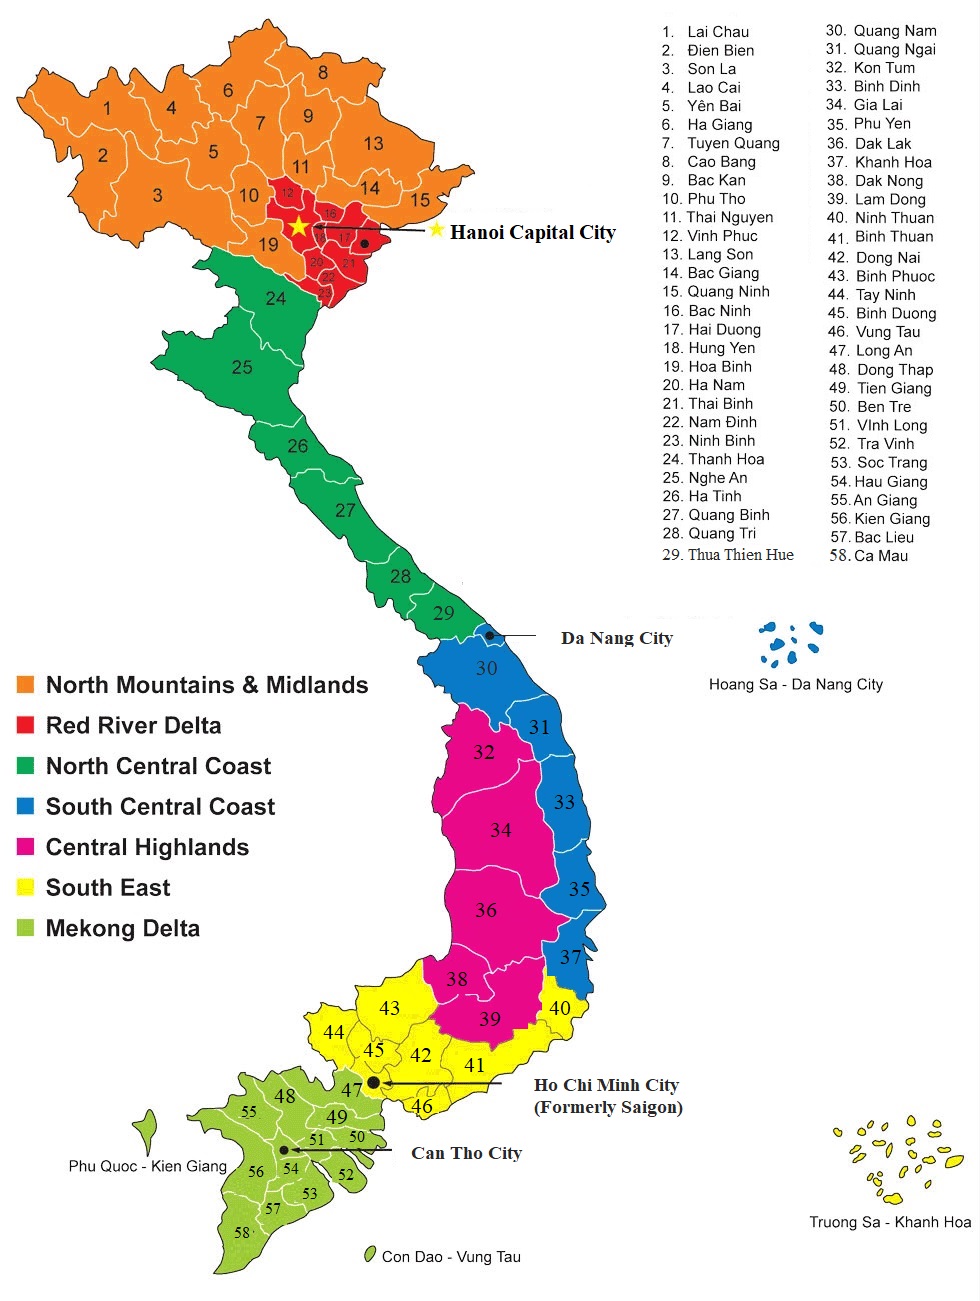 map-of-vietnam